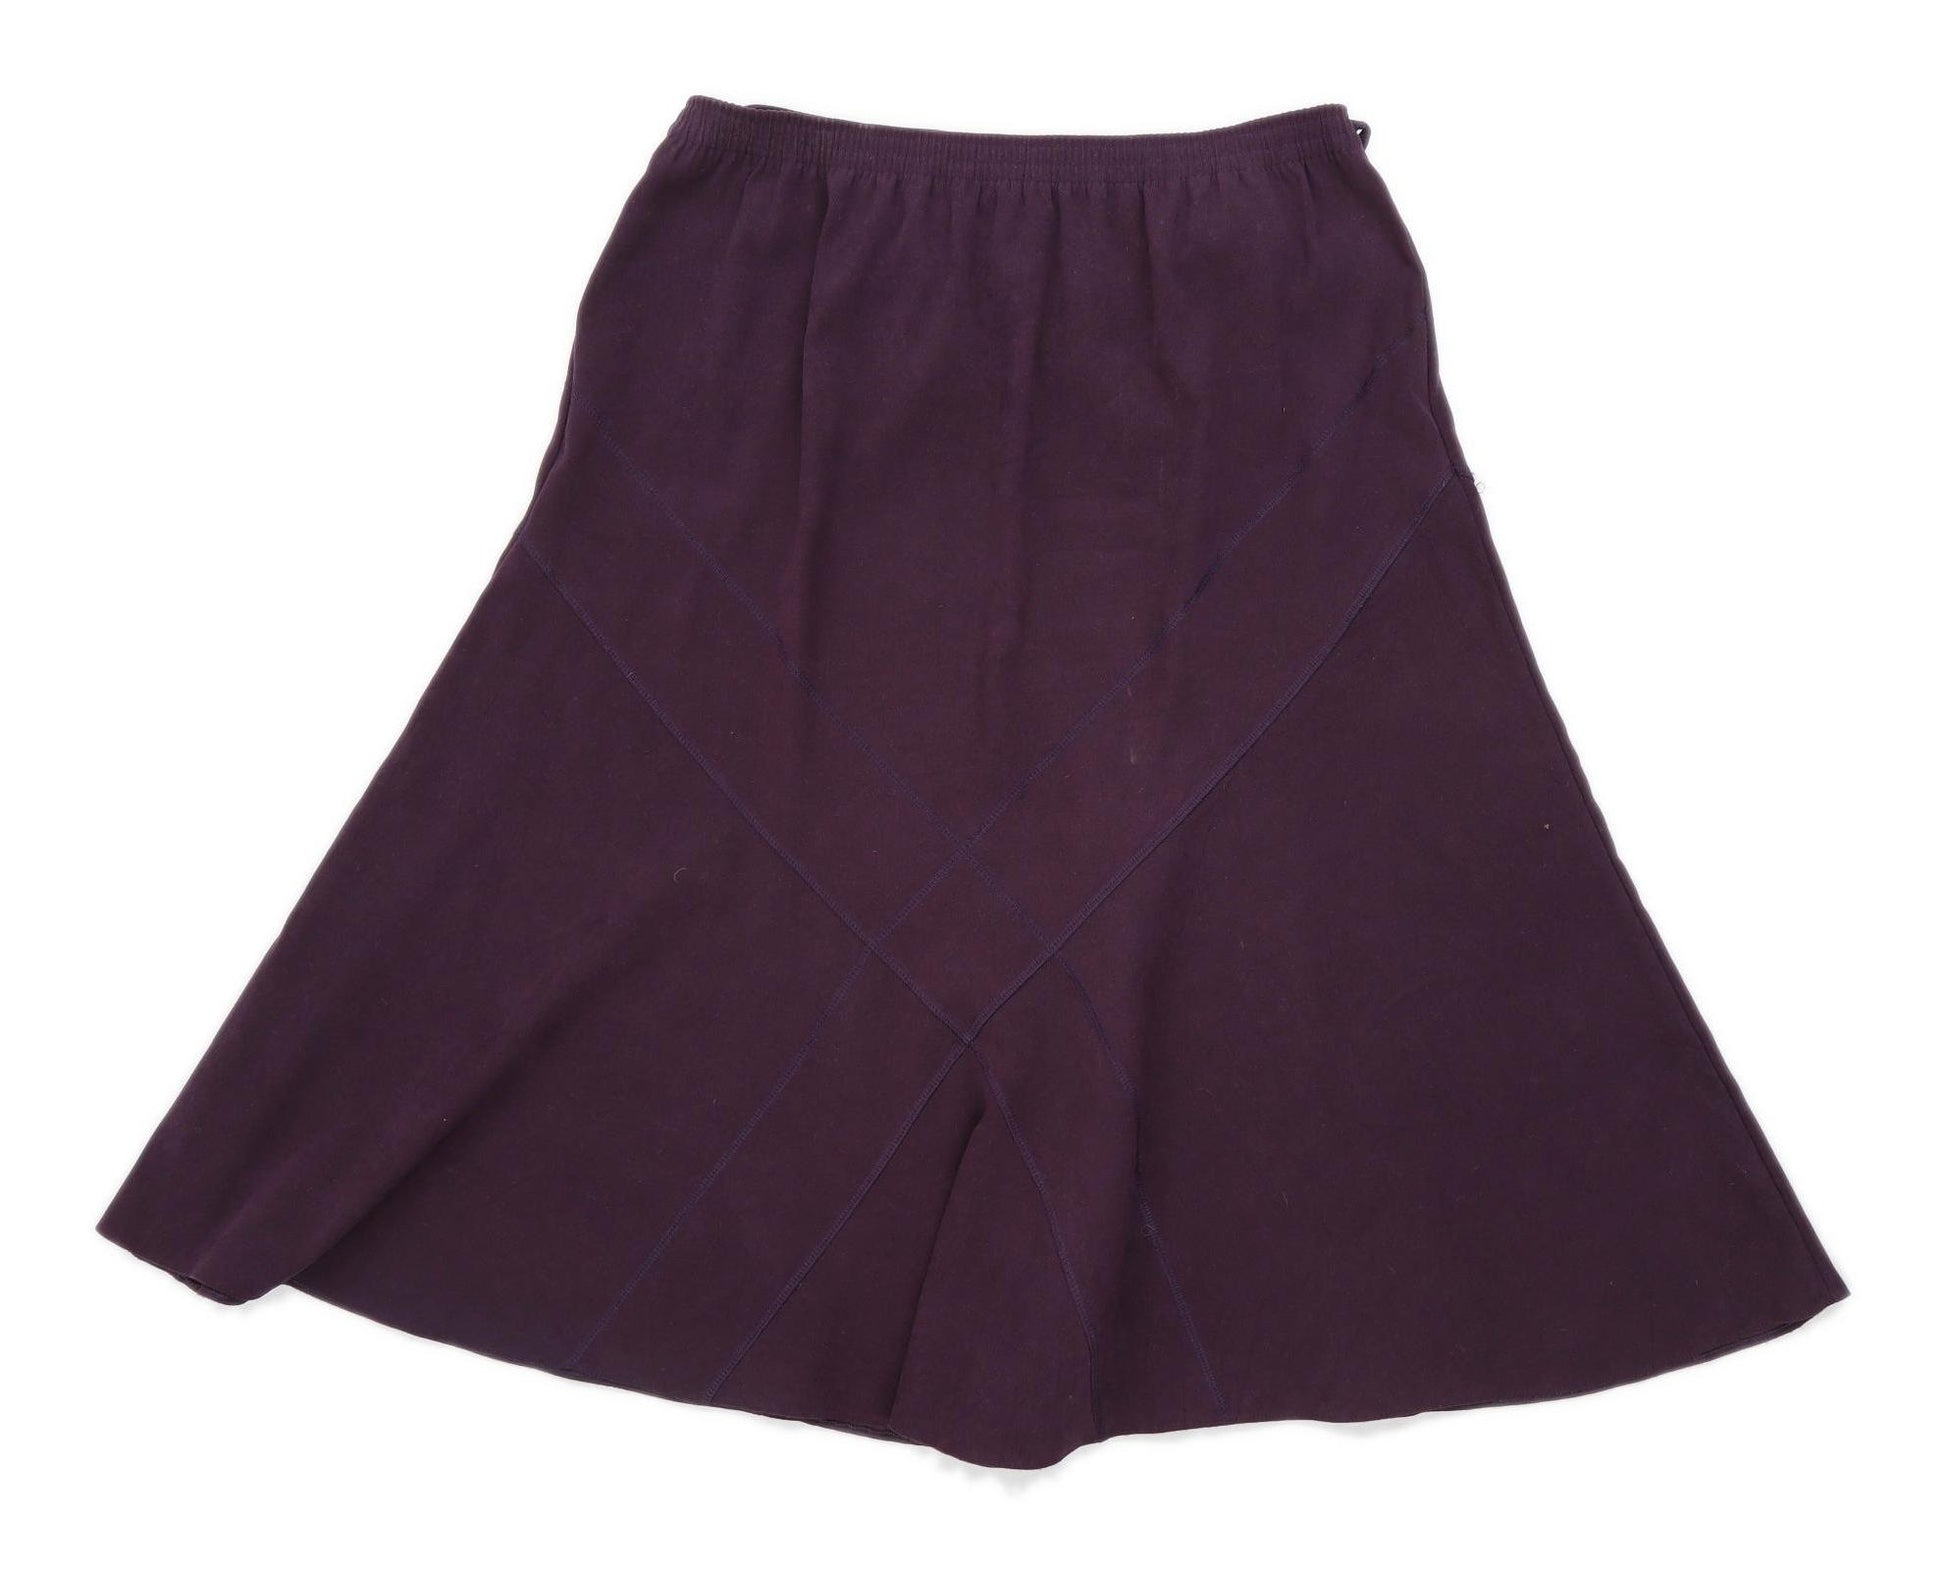 Womens Purple Flare Skirt